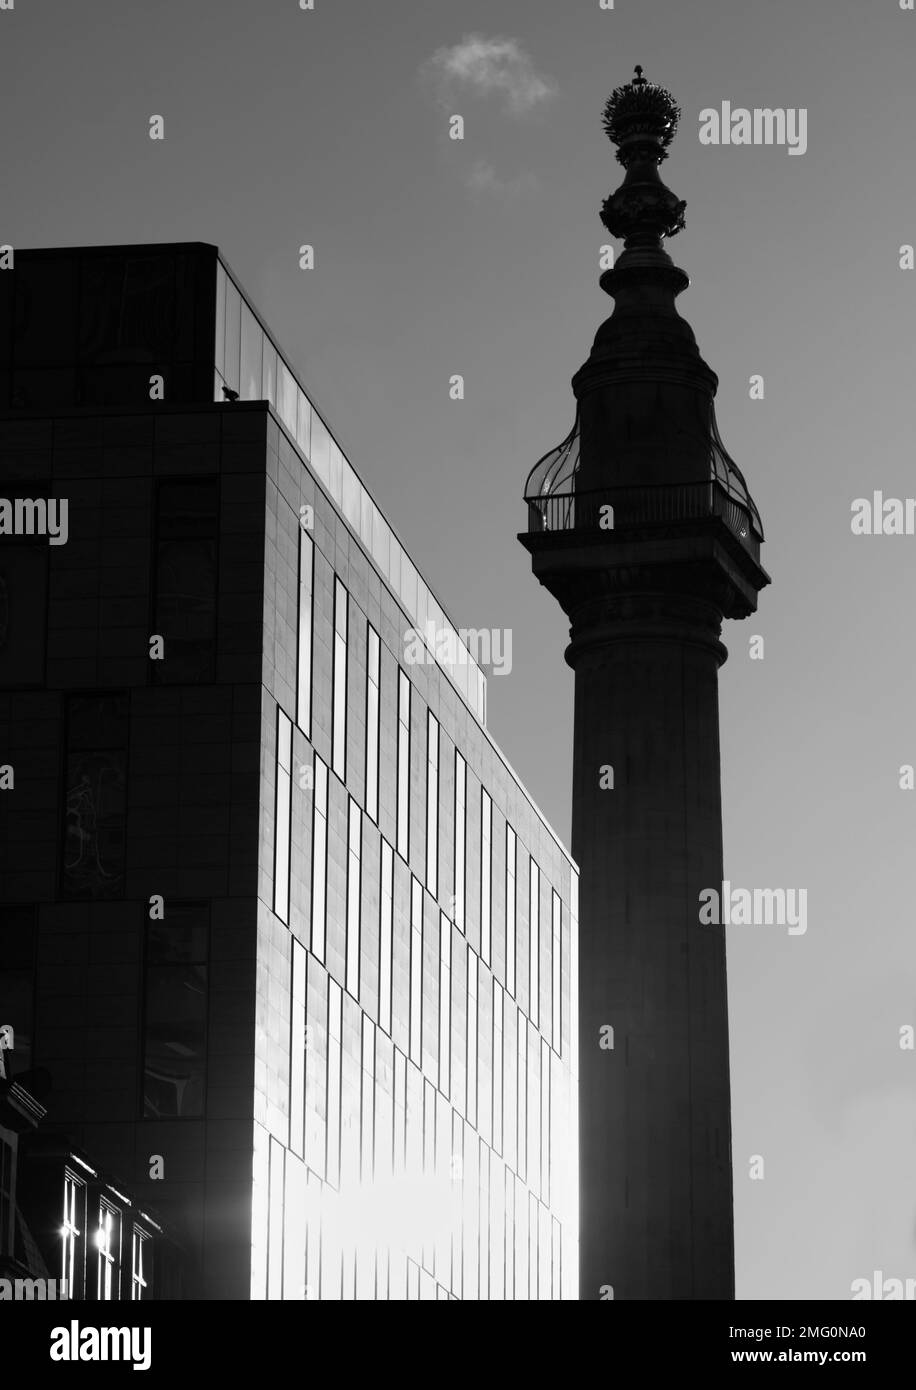 Monocromo, blanco y negro del monumento en silueta retroiluminado por el sol contrastó con Un moderno bloque de oficinas, la ciudad de Londres, Reino Unido Foto de stock